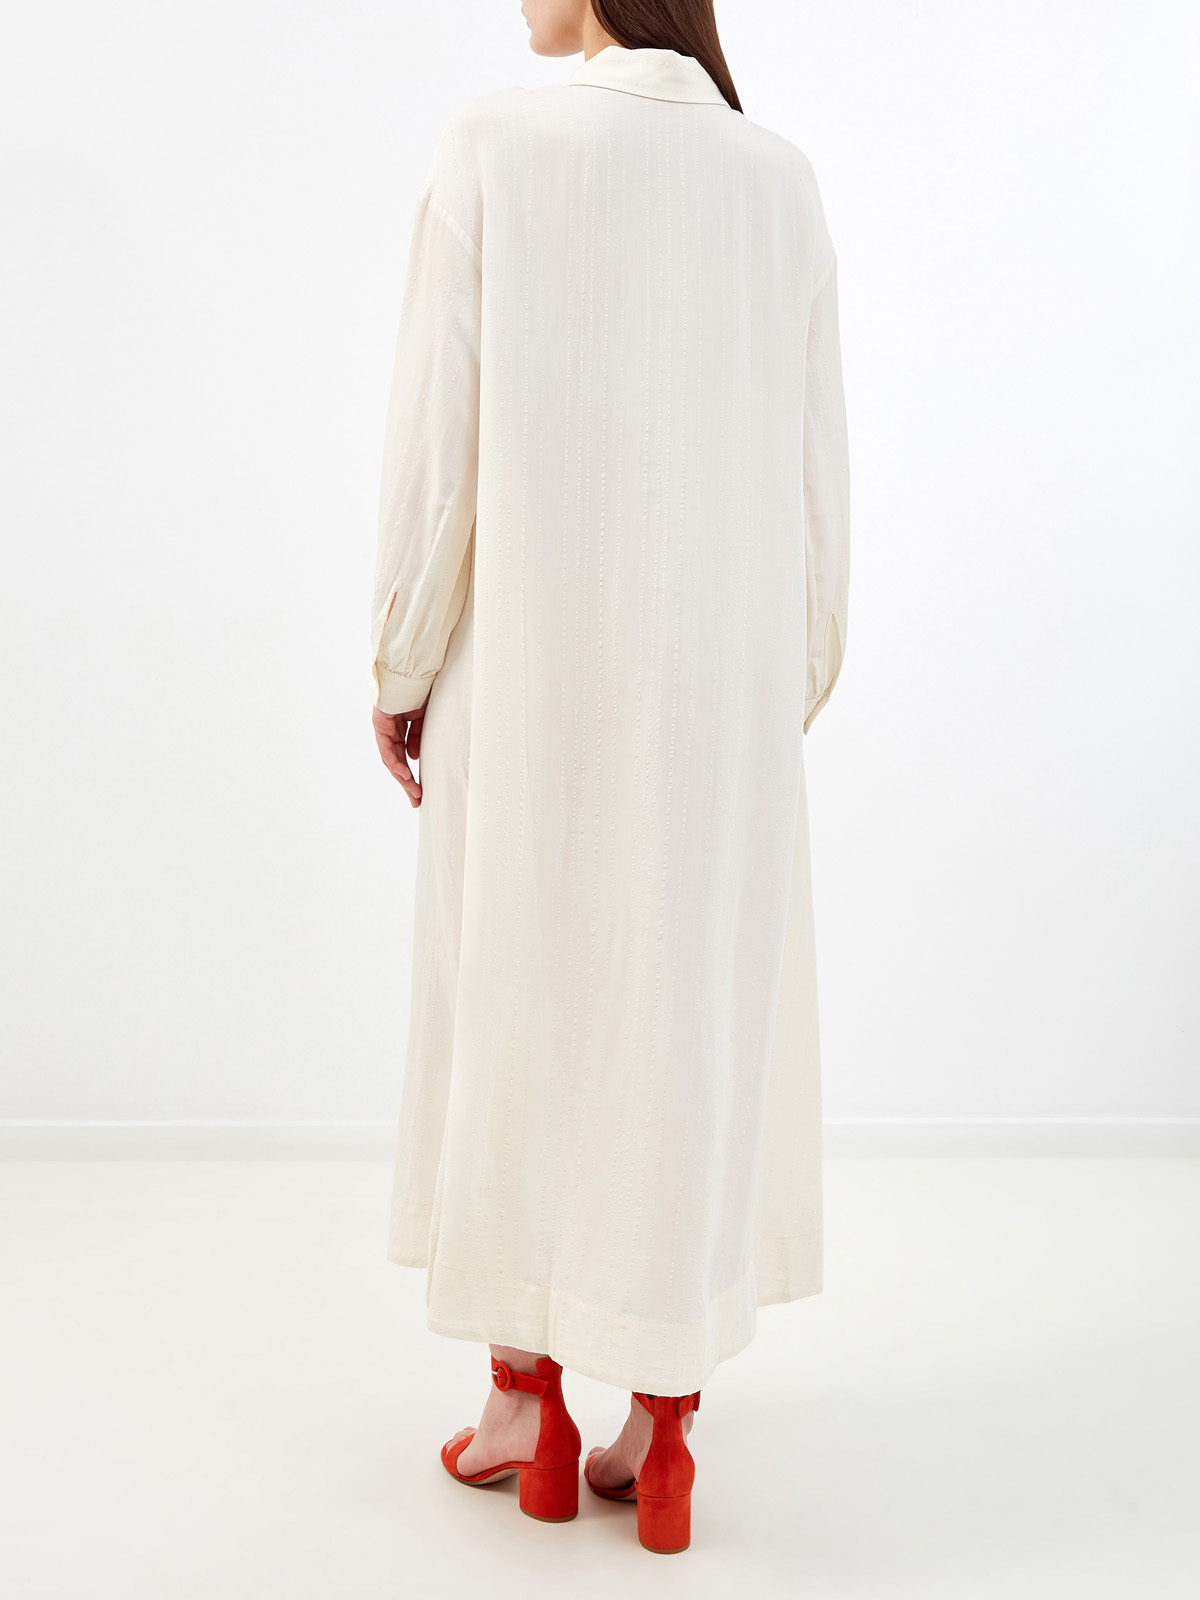 Кремовое платье-рубашка с отложным воротником и прострочкой RE VERA, цвет белый, размер M;XL;S - фото 4